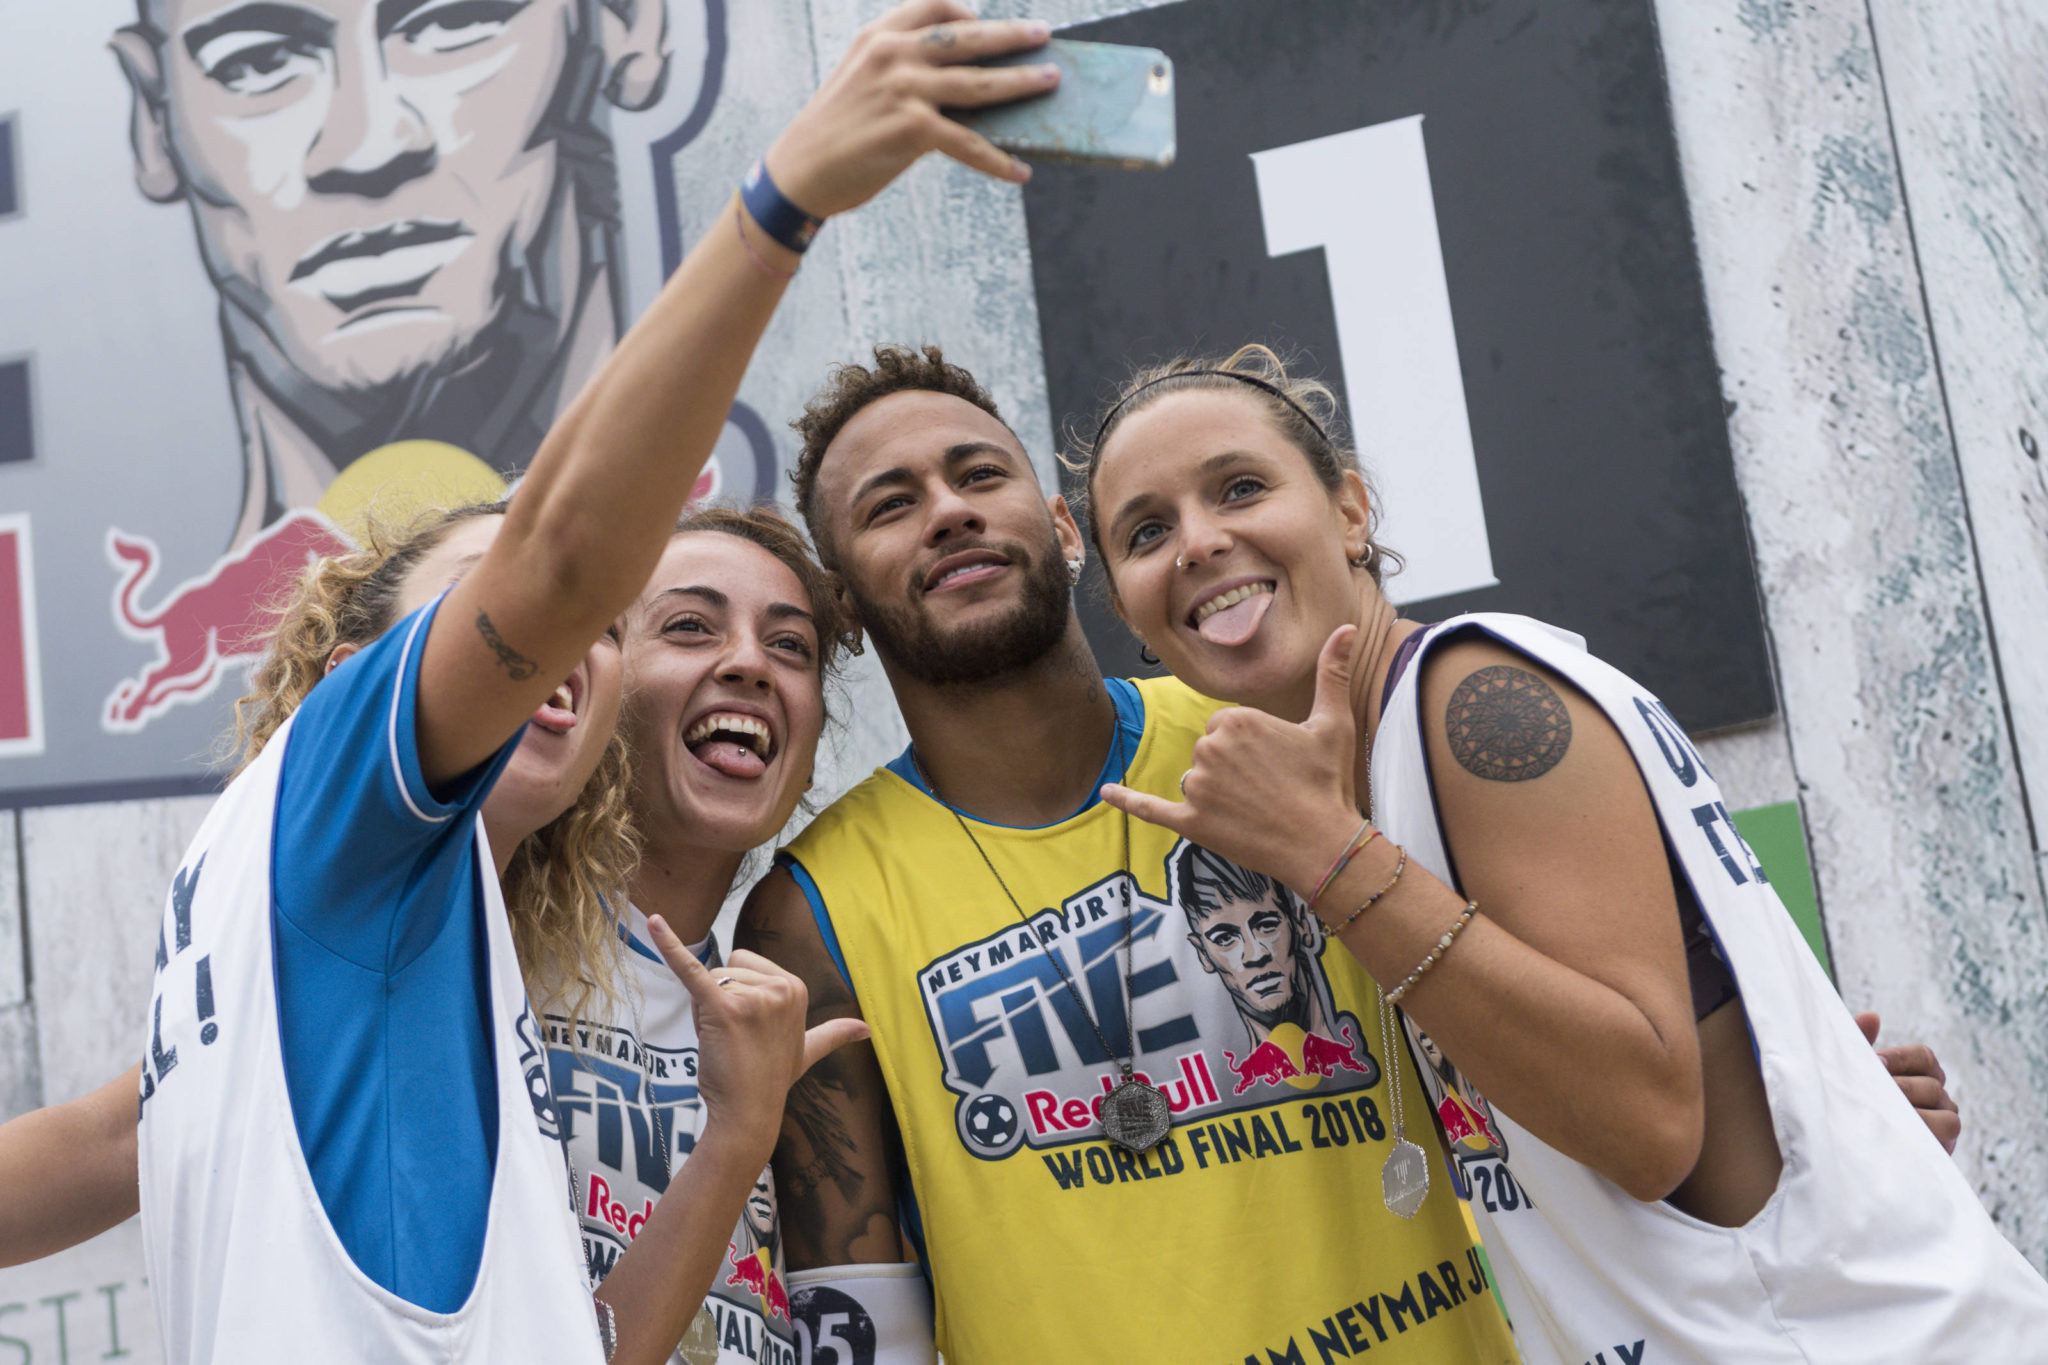 Red Bull Neymar Jr’s Five: arriva a Genova l’evento che regala il sogno di incontrare la stella brasiliana